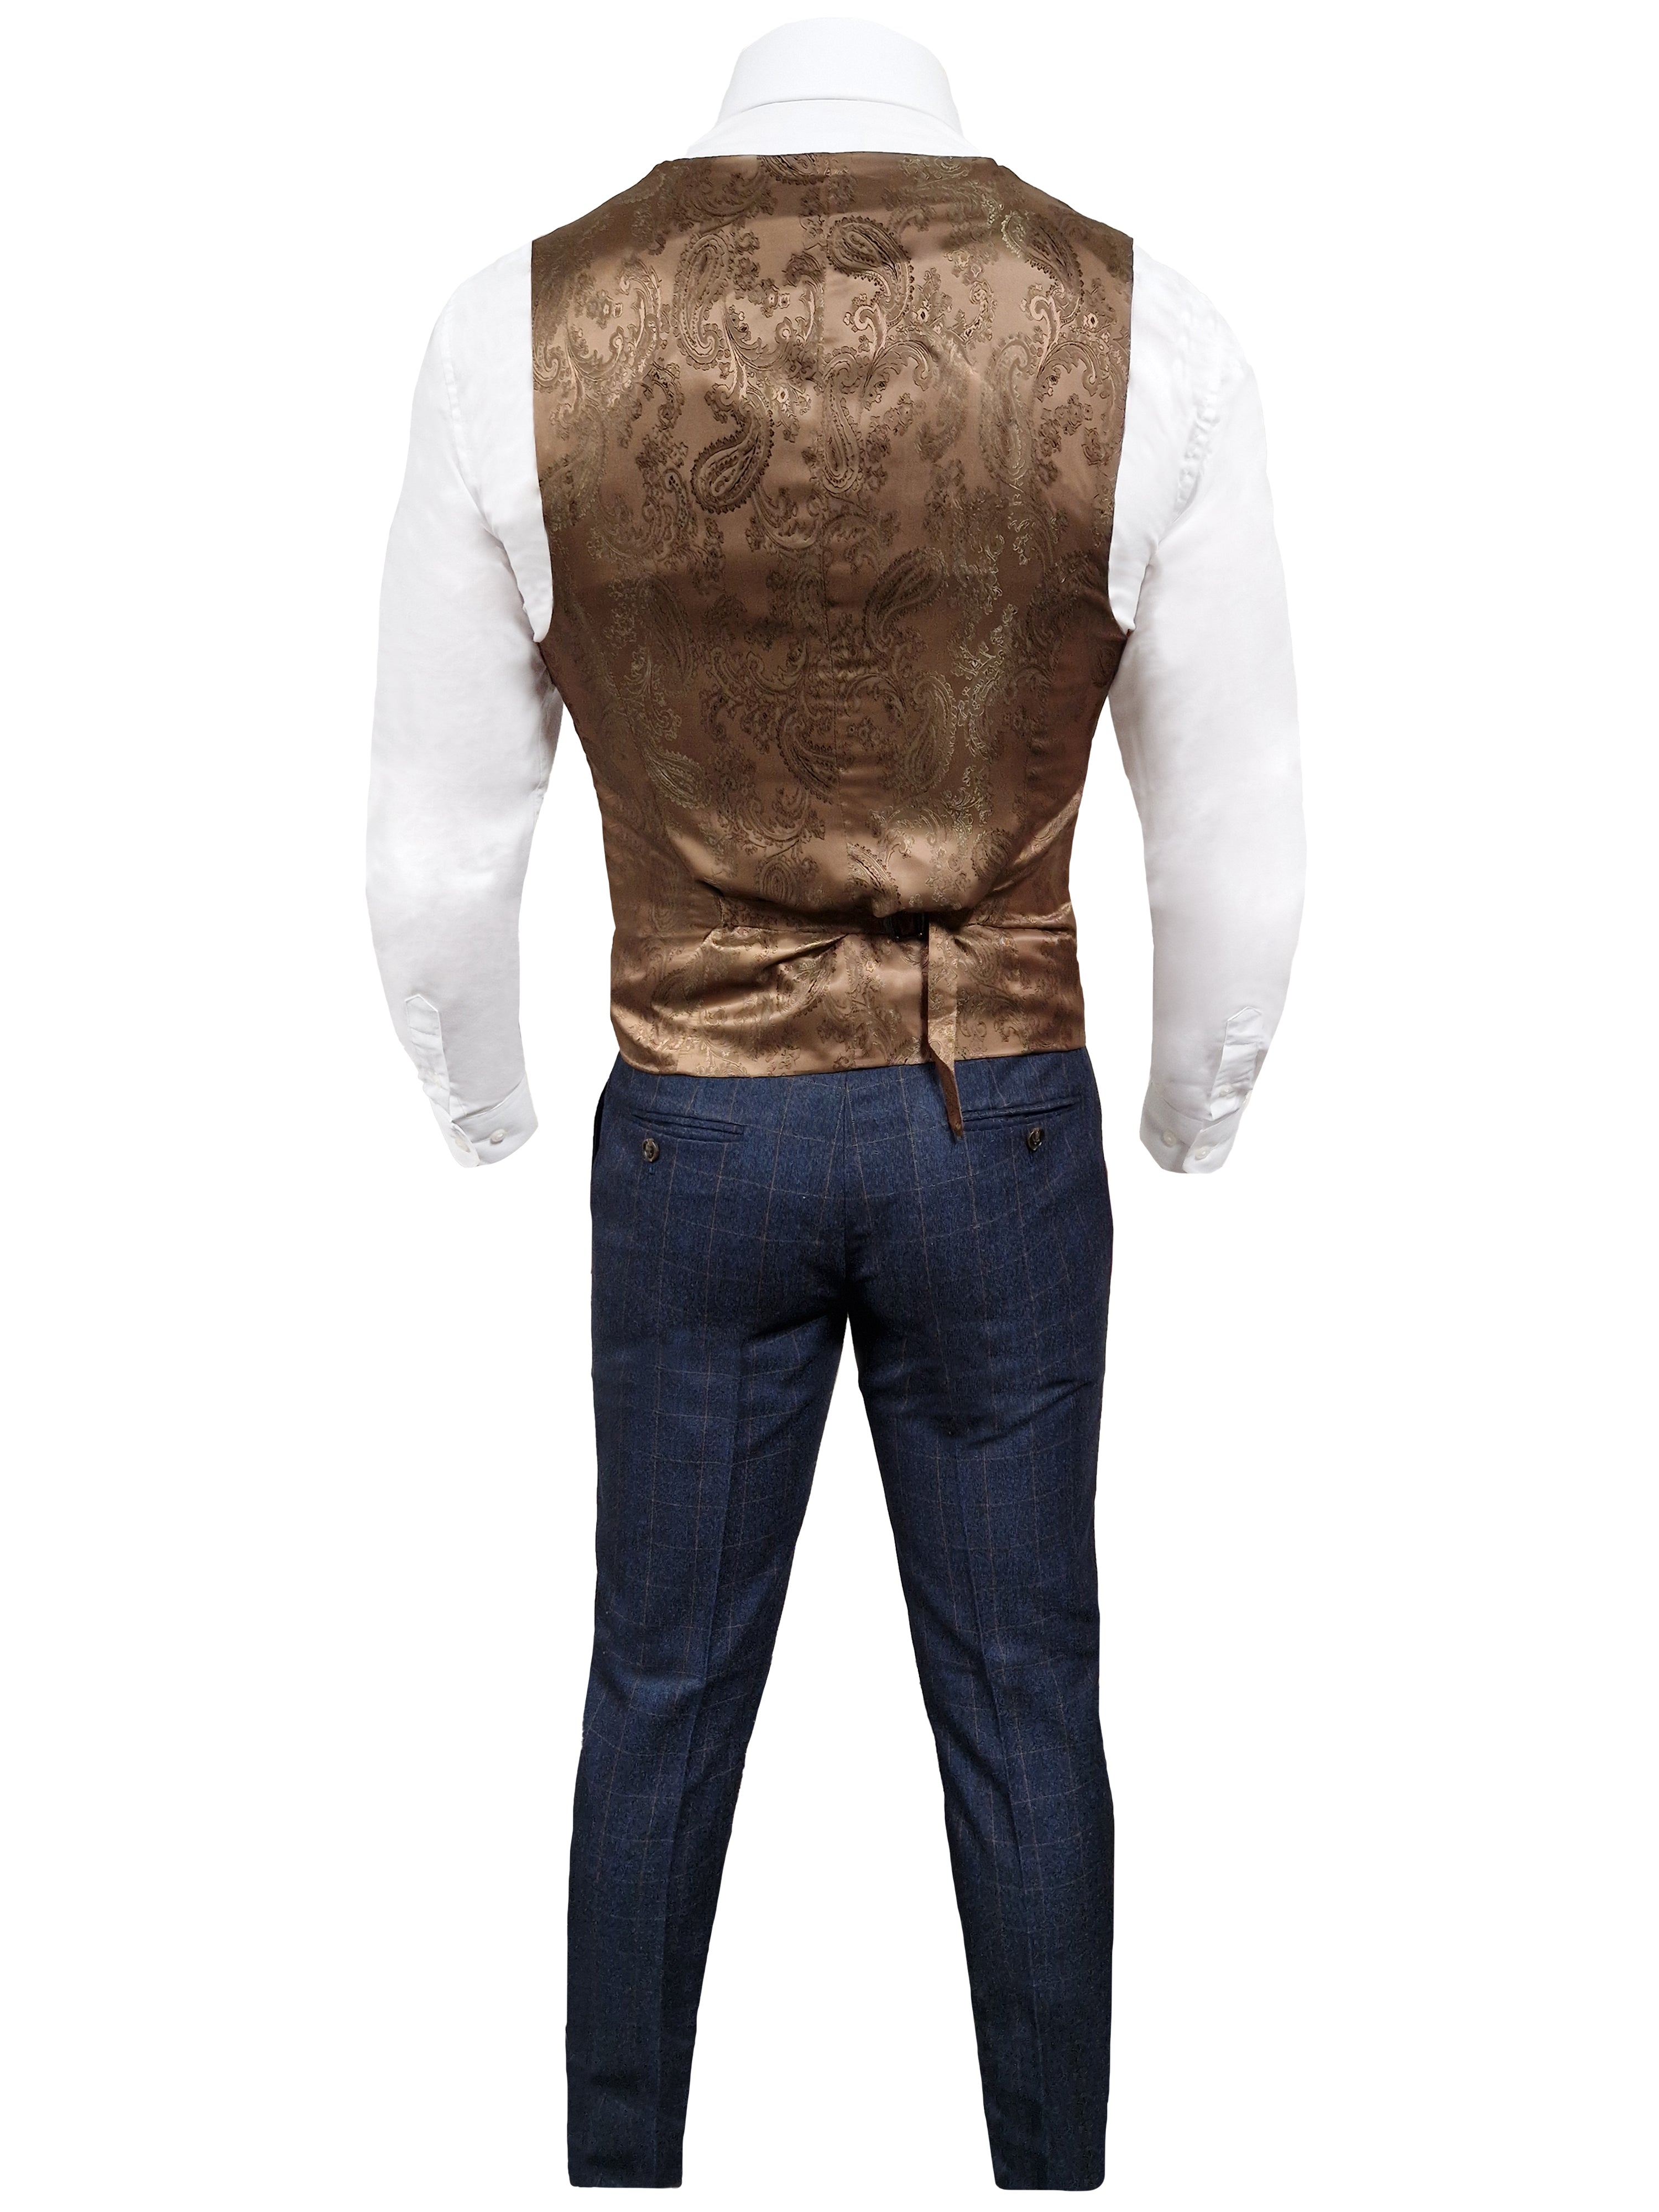 TAVERNY Admiral - Men's Three-Piece Suit Gentleman Navy